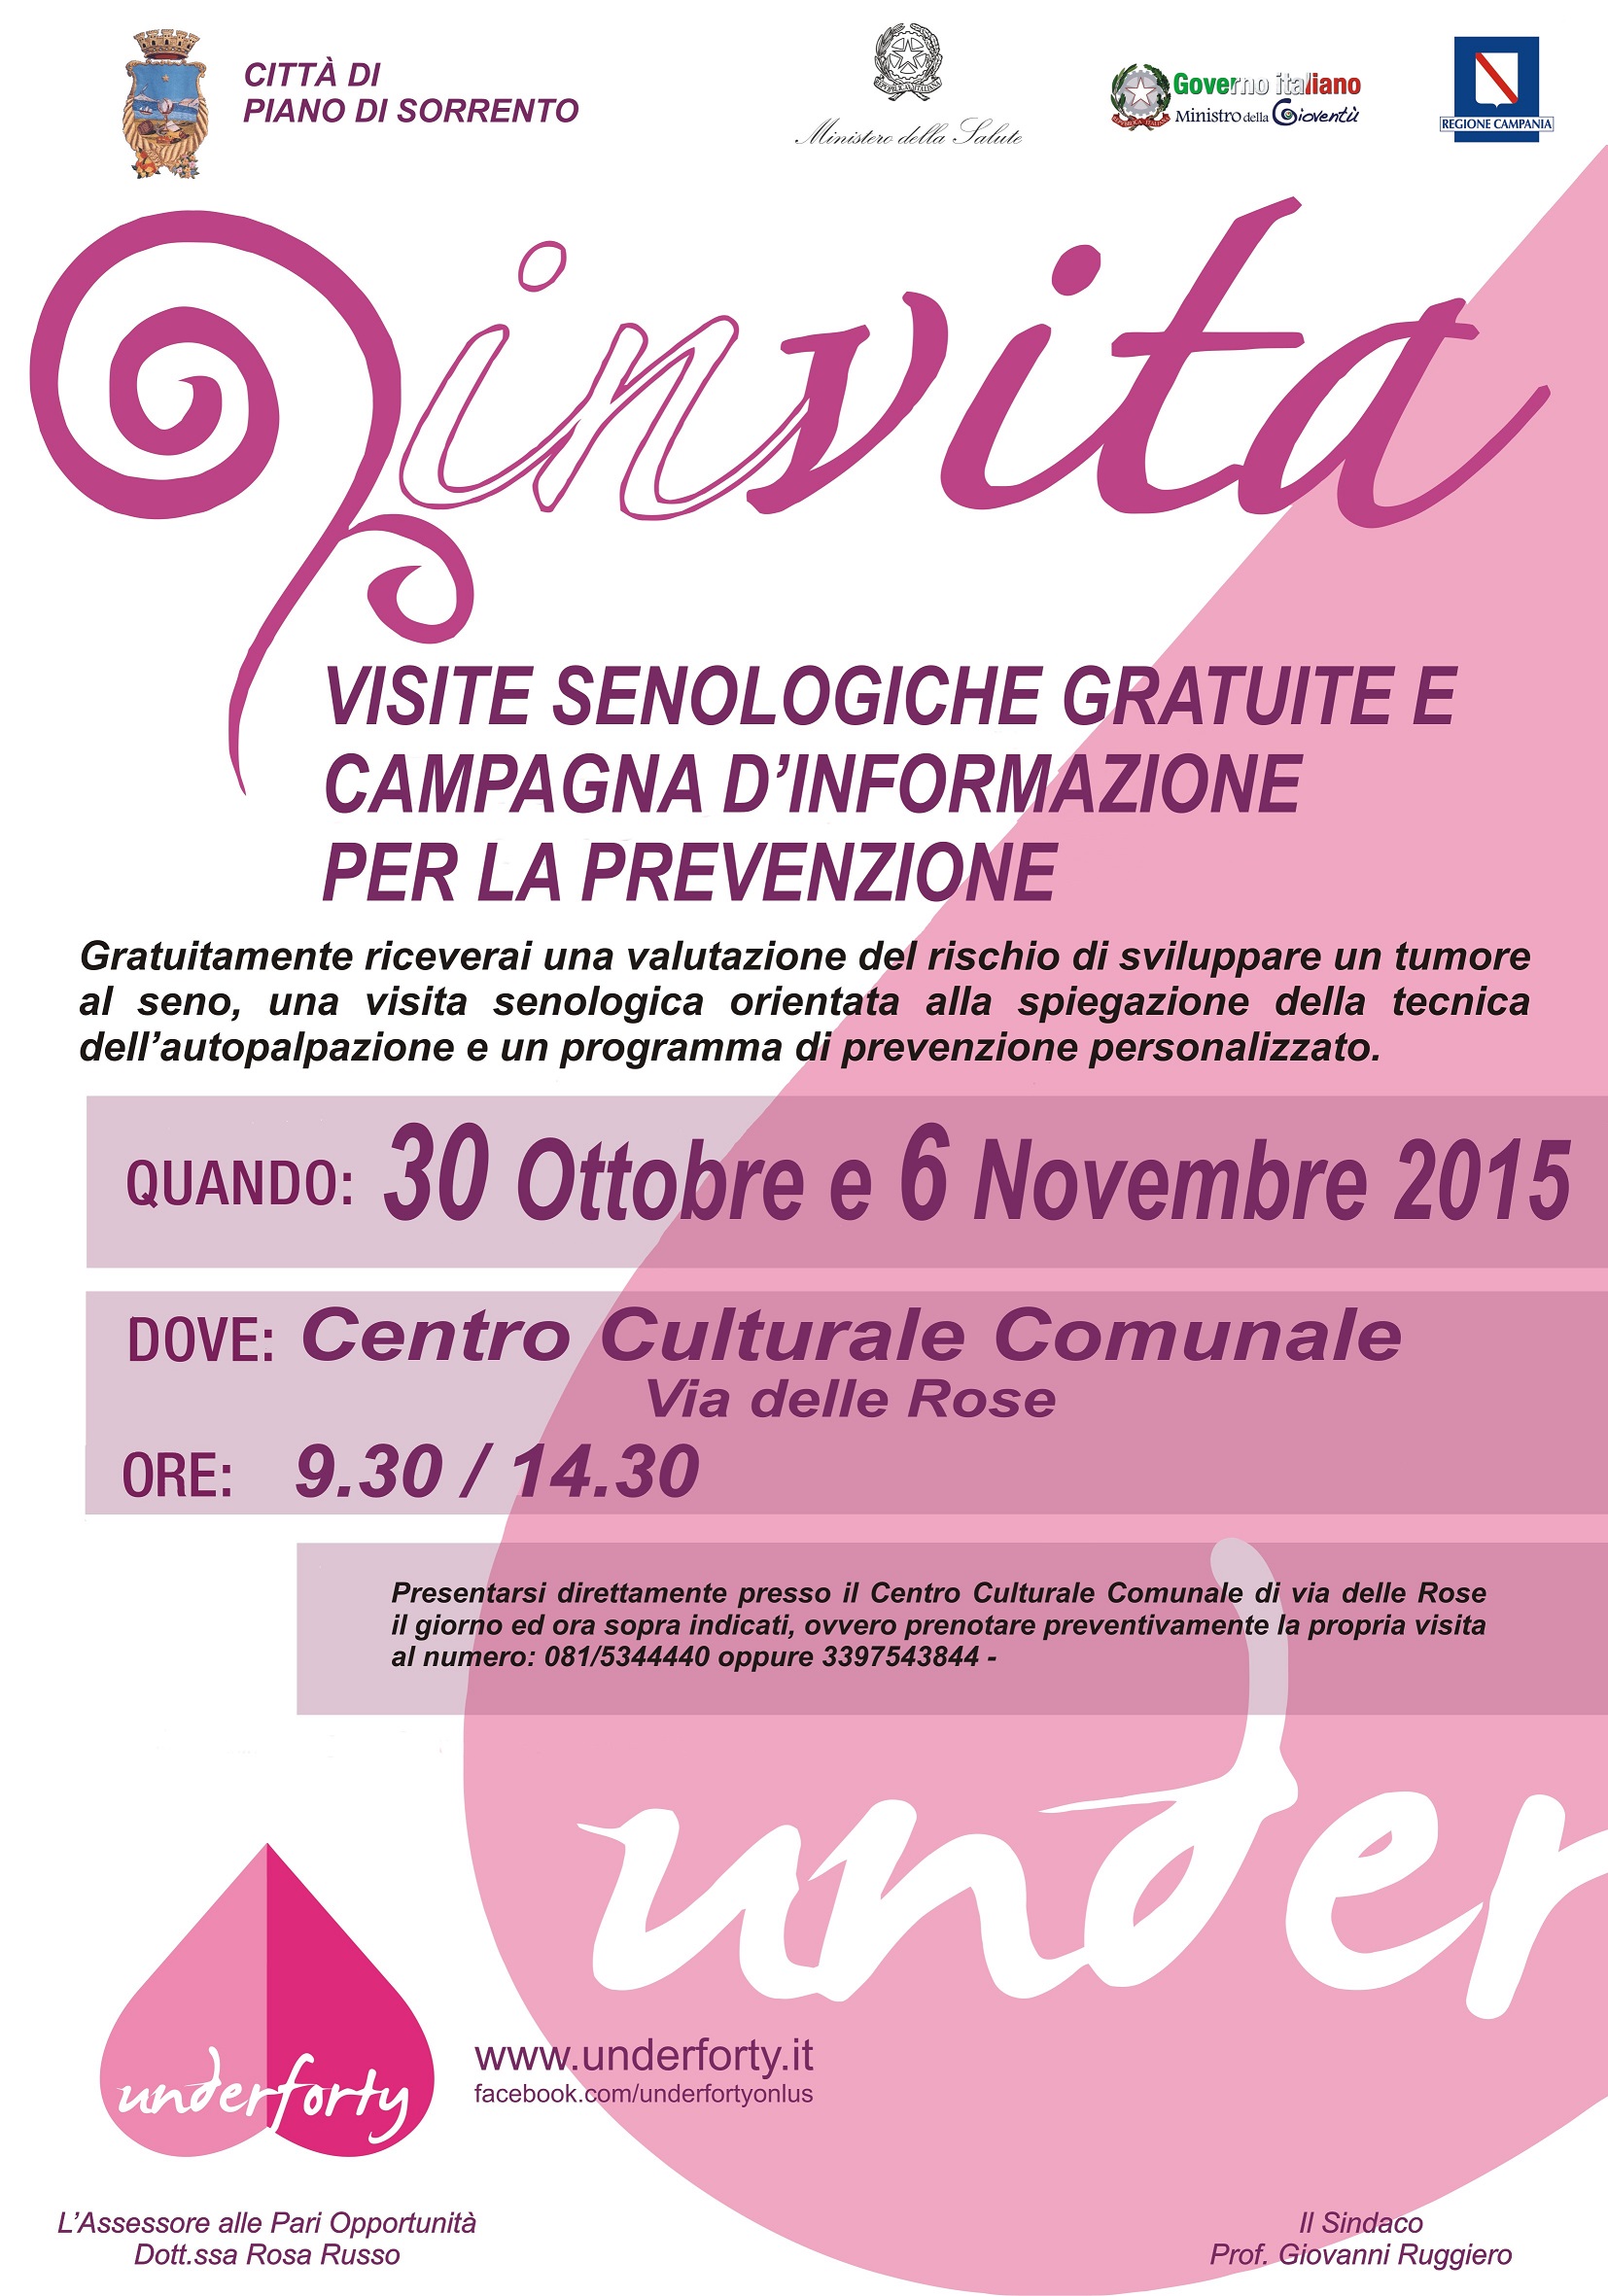  A Piano di Sorrento il progetto “Underforty Women”: visite senologiche gratis e prevenzione